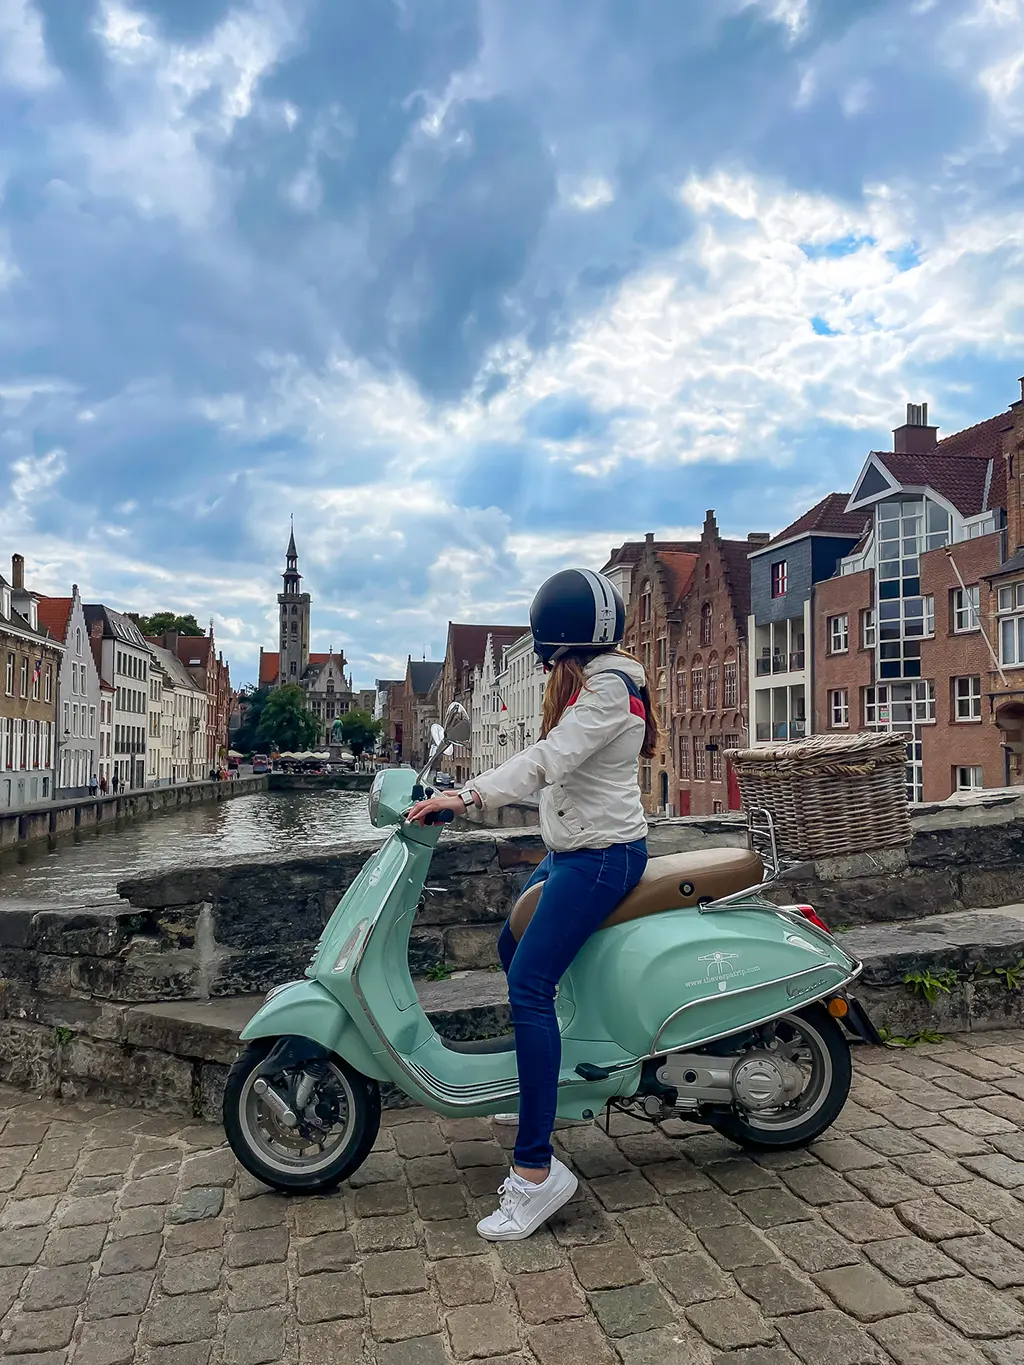 Vespa trip à Bruges : notre avis sur cette expérience